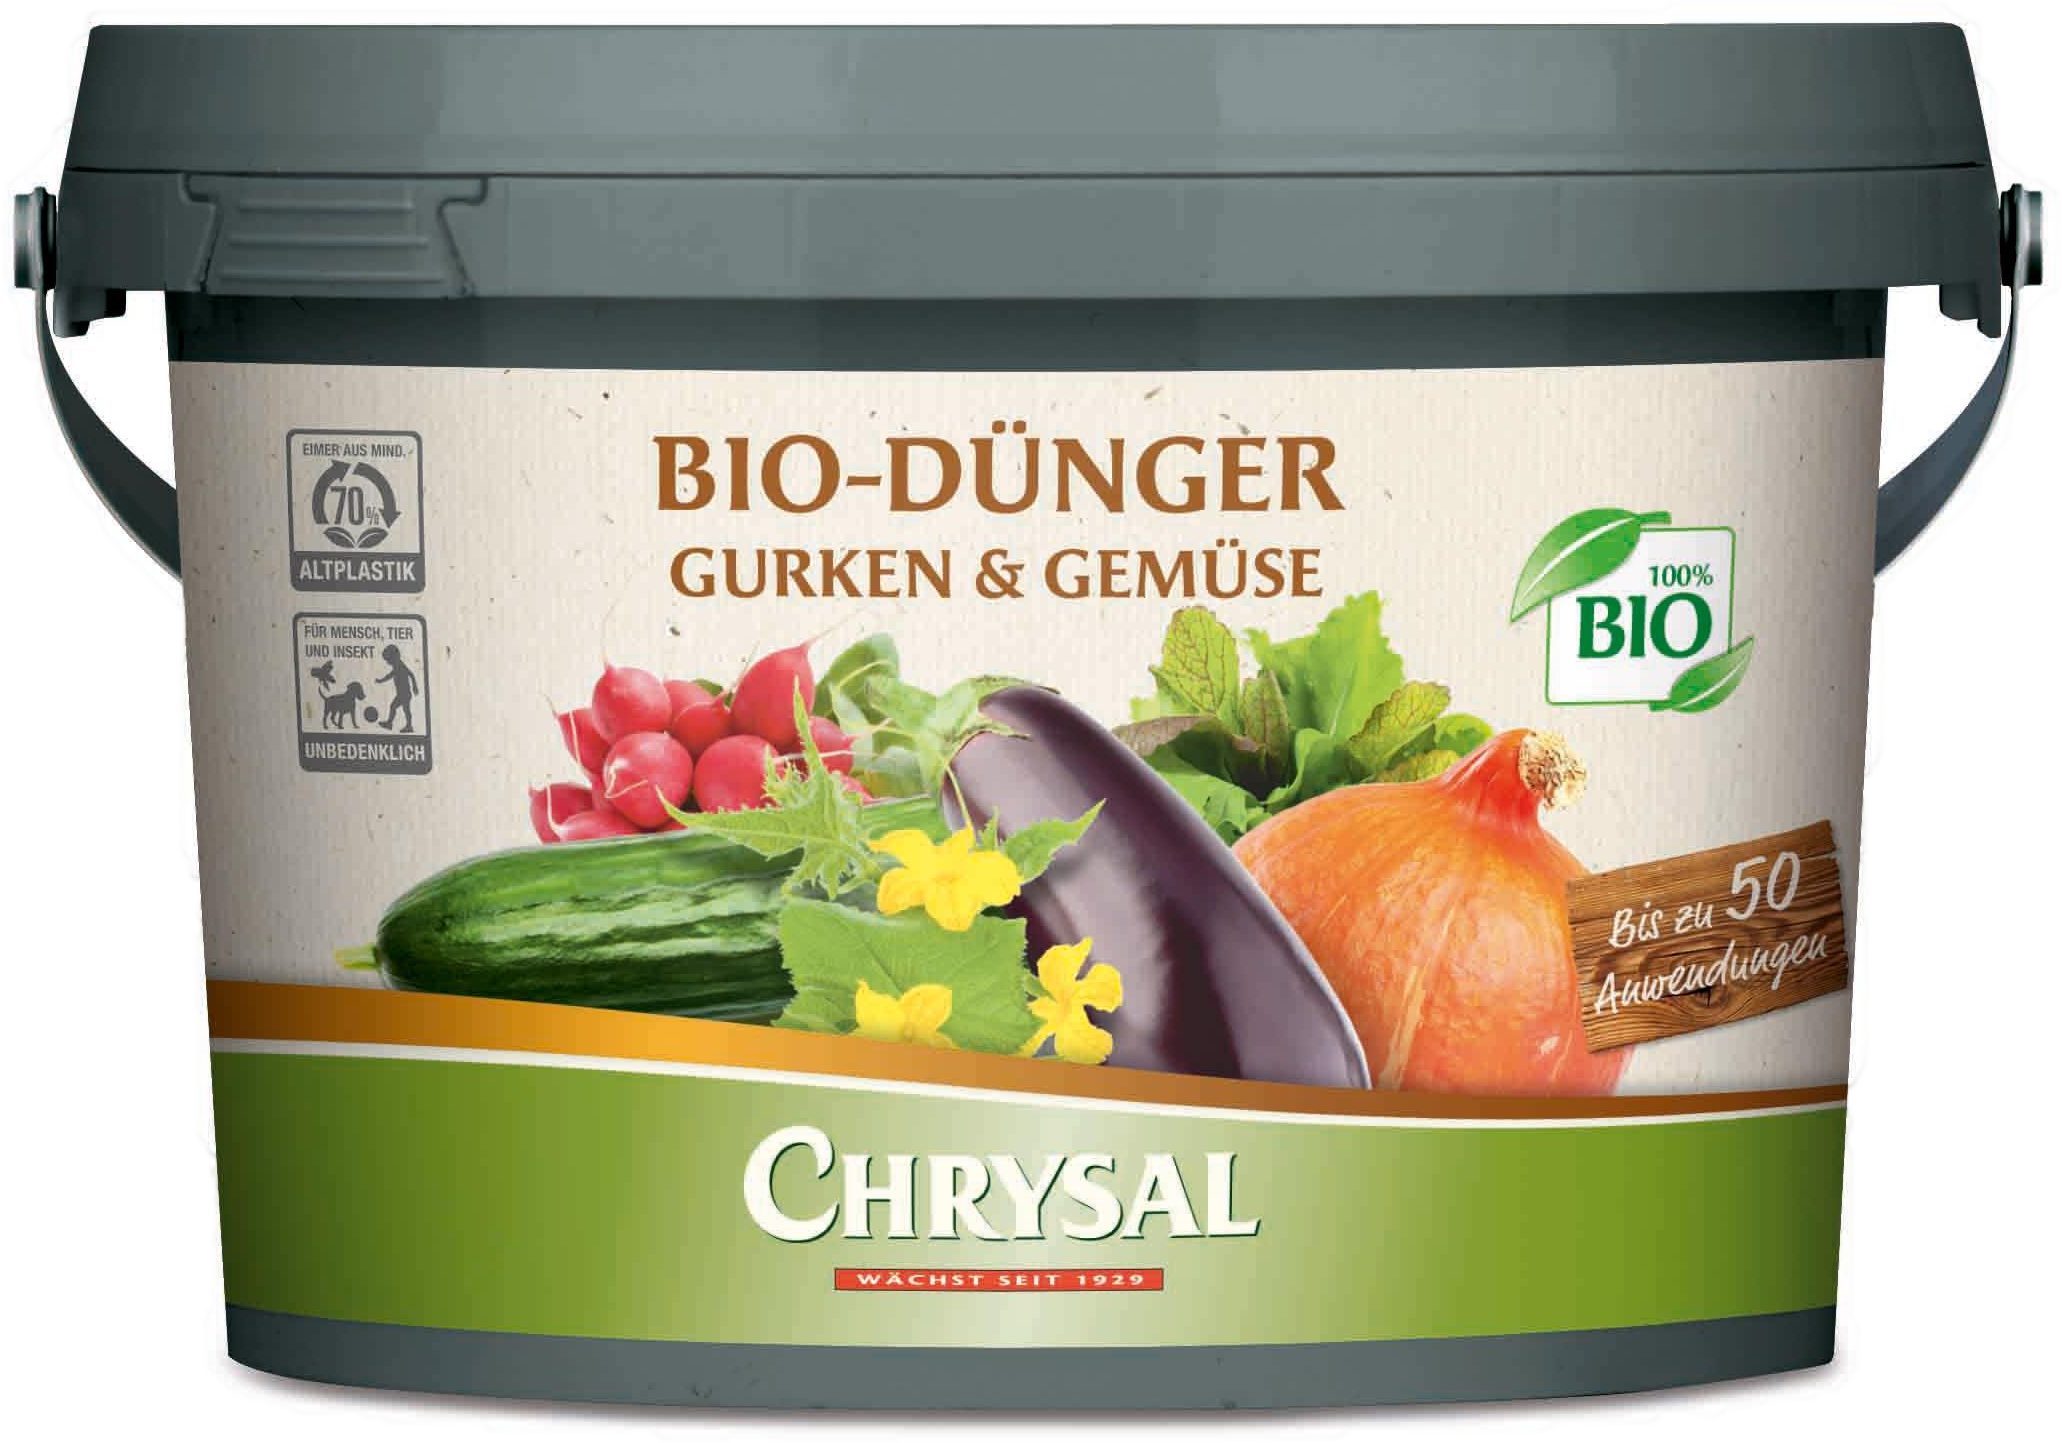 Chrysal Gemüsedünger Chrysal Bio-Dünger Gurken & Gemüse 1 kg Eimer, 1-St., 1 Kg Eimer